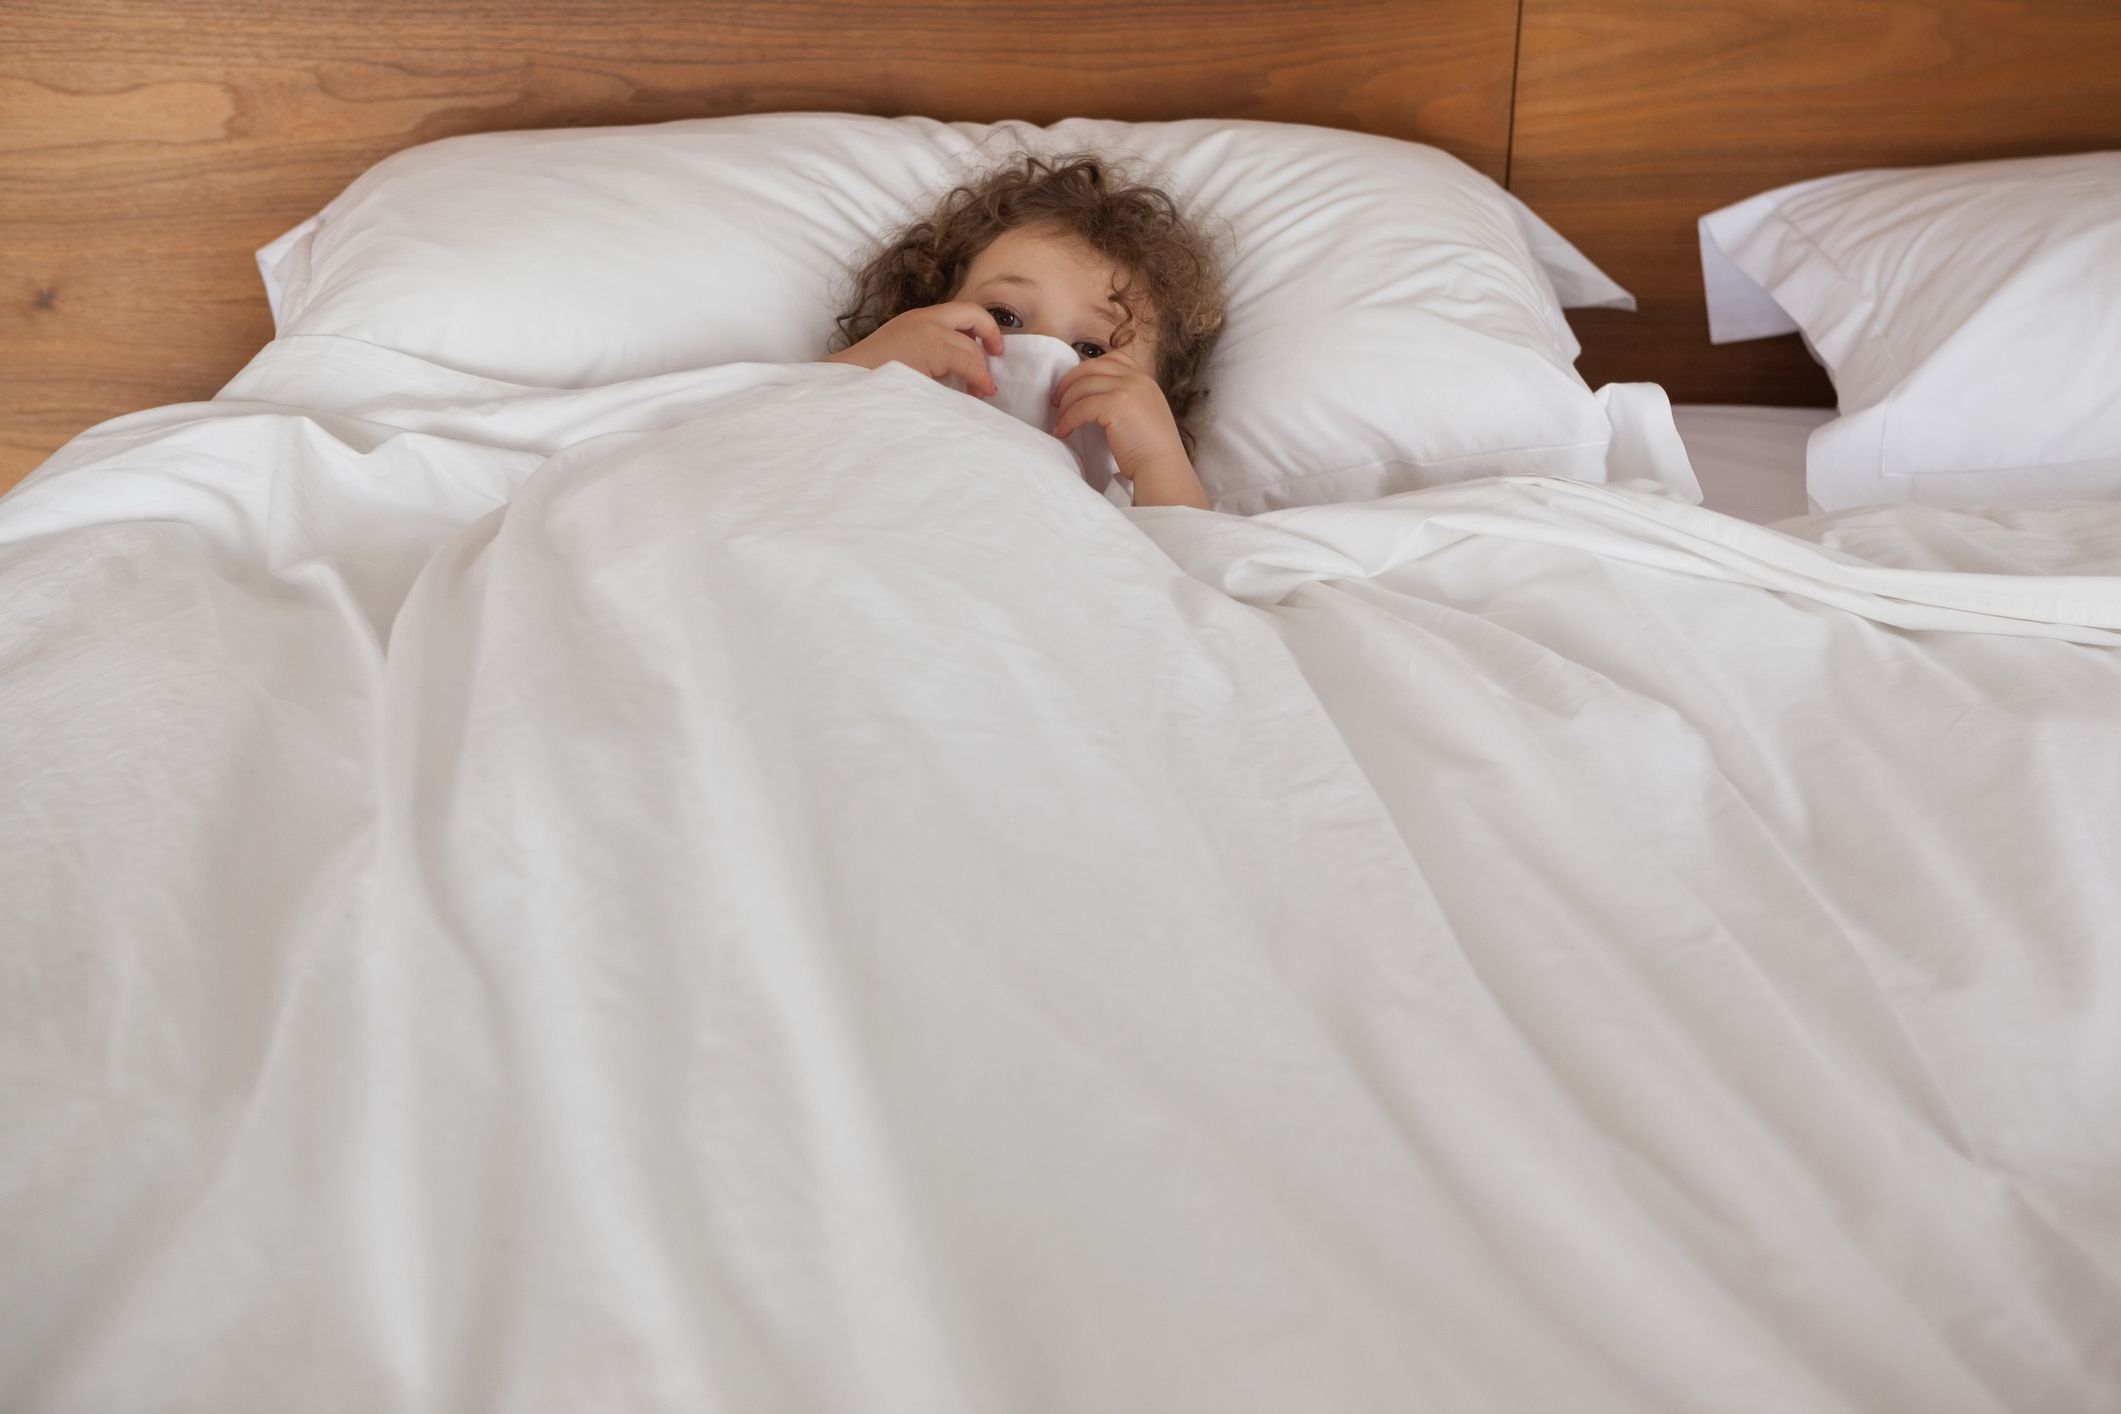 Pipi au lit : Comment réagir quand son enfant fait pipi au lit ?